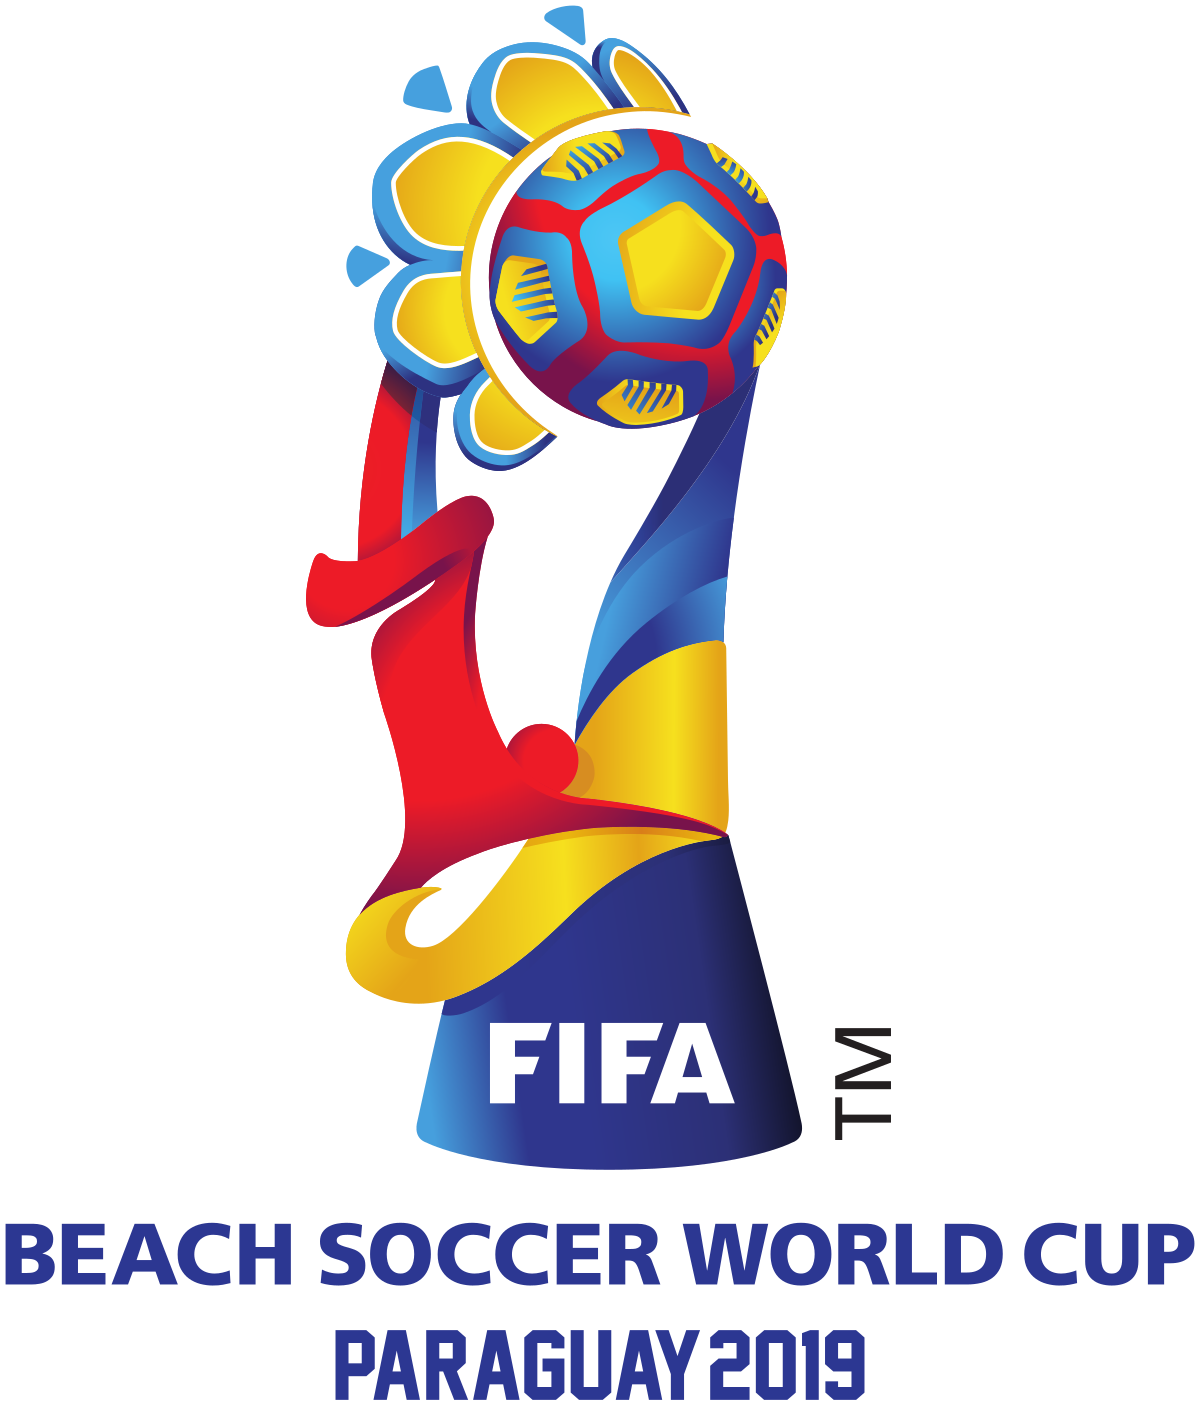 19 Fifa Beach Soccer World Cup Wikipedia